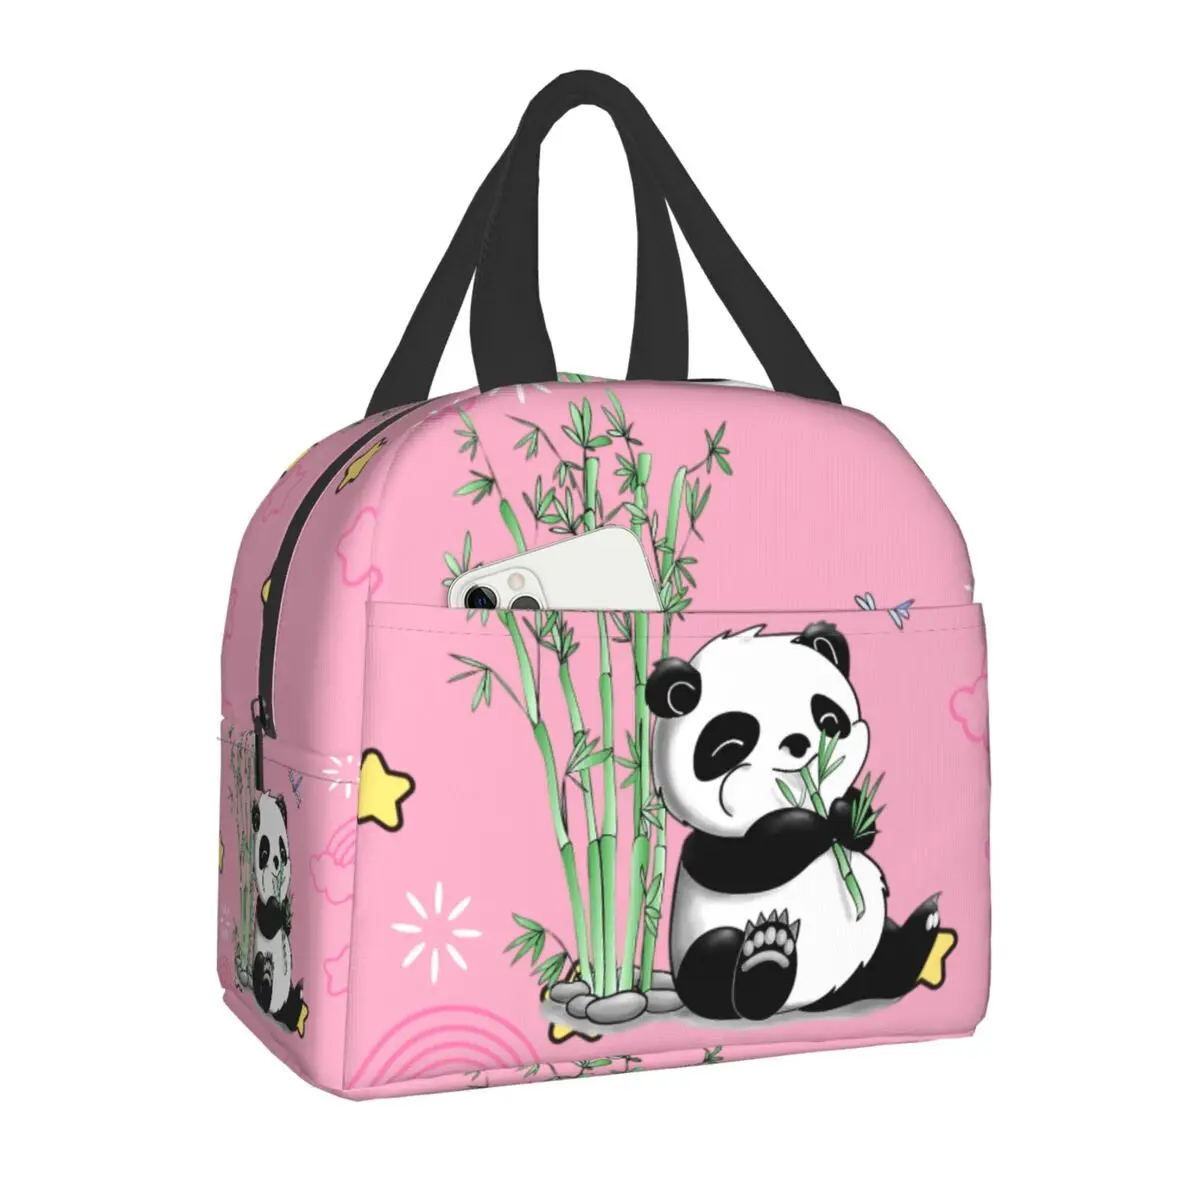 

Изолированная сумка для ланча с изображением медведя панды для открытого пикника, портативный охладитель, термоконтейнер для ланча, женские, детские, школьные, рабочие сумки для хранения еды